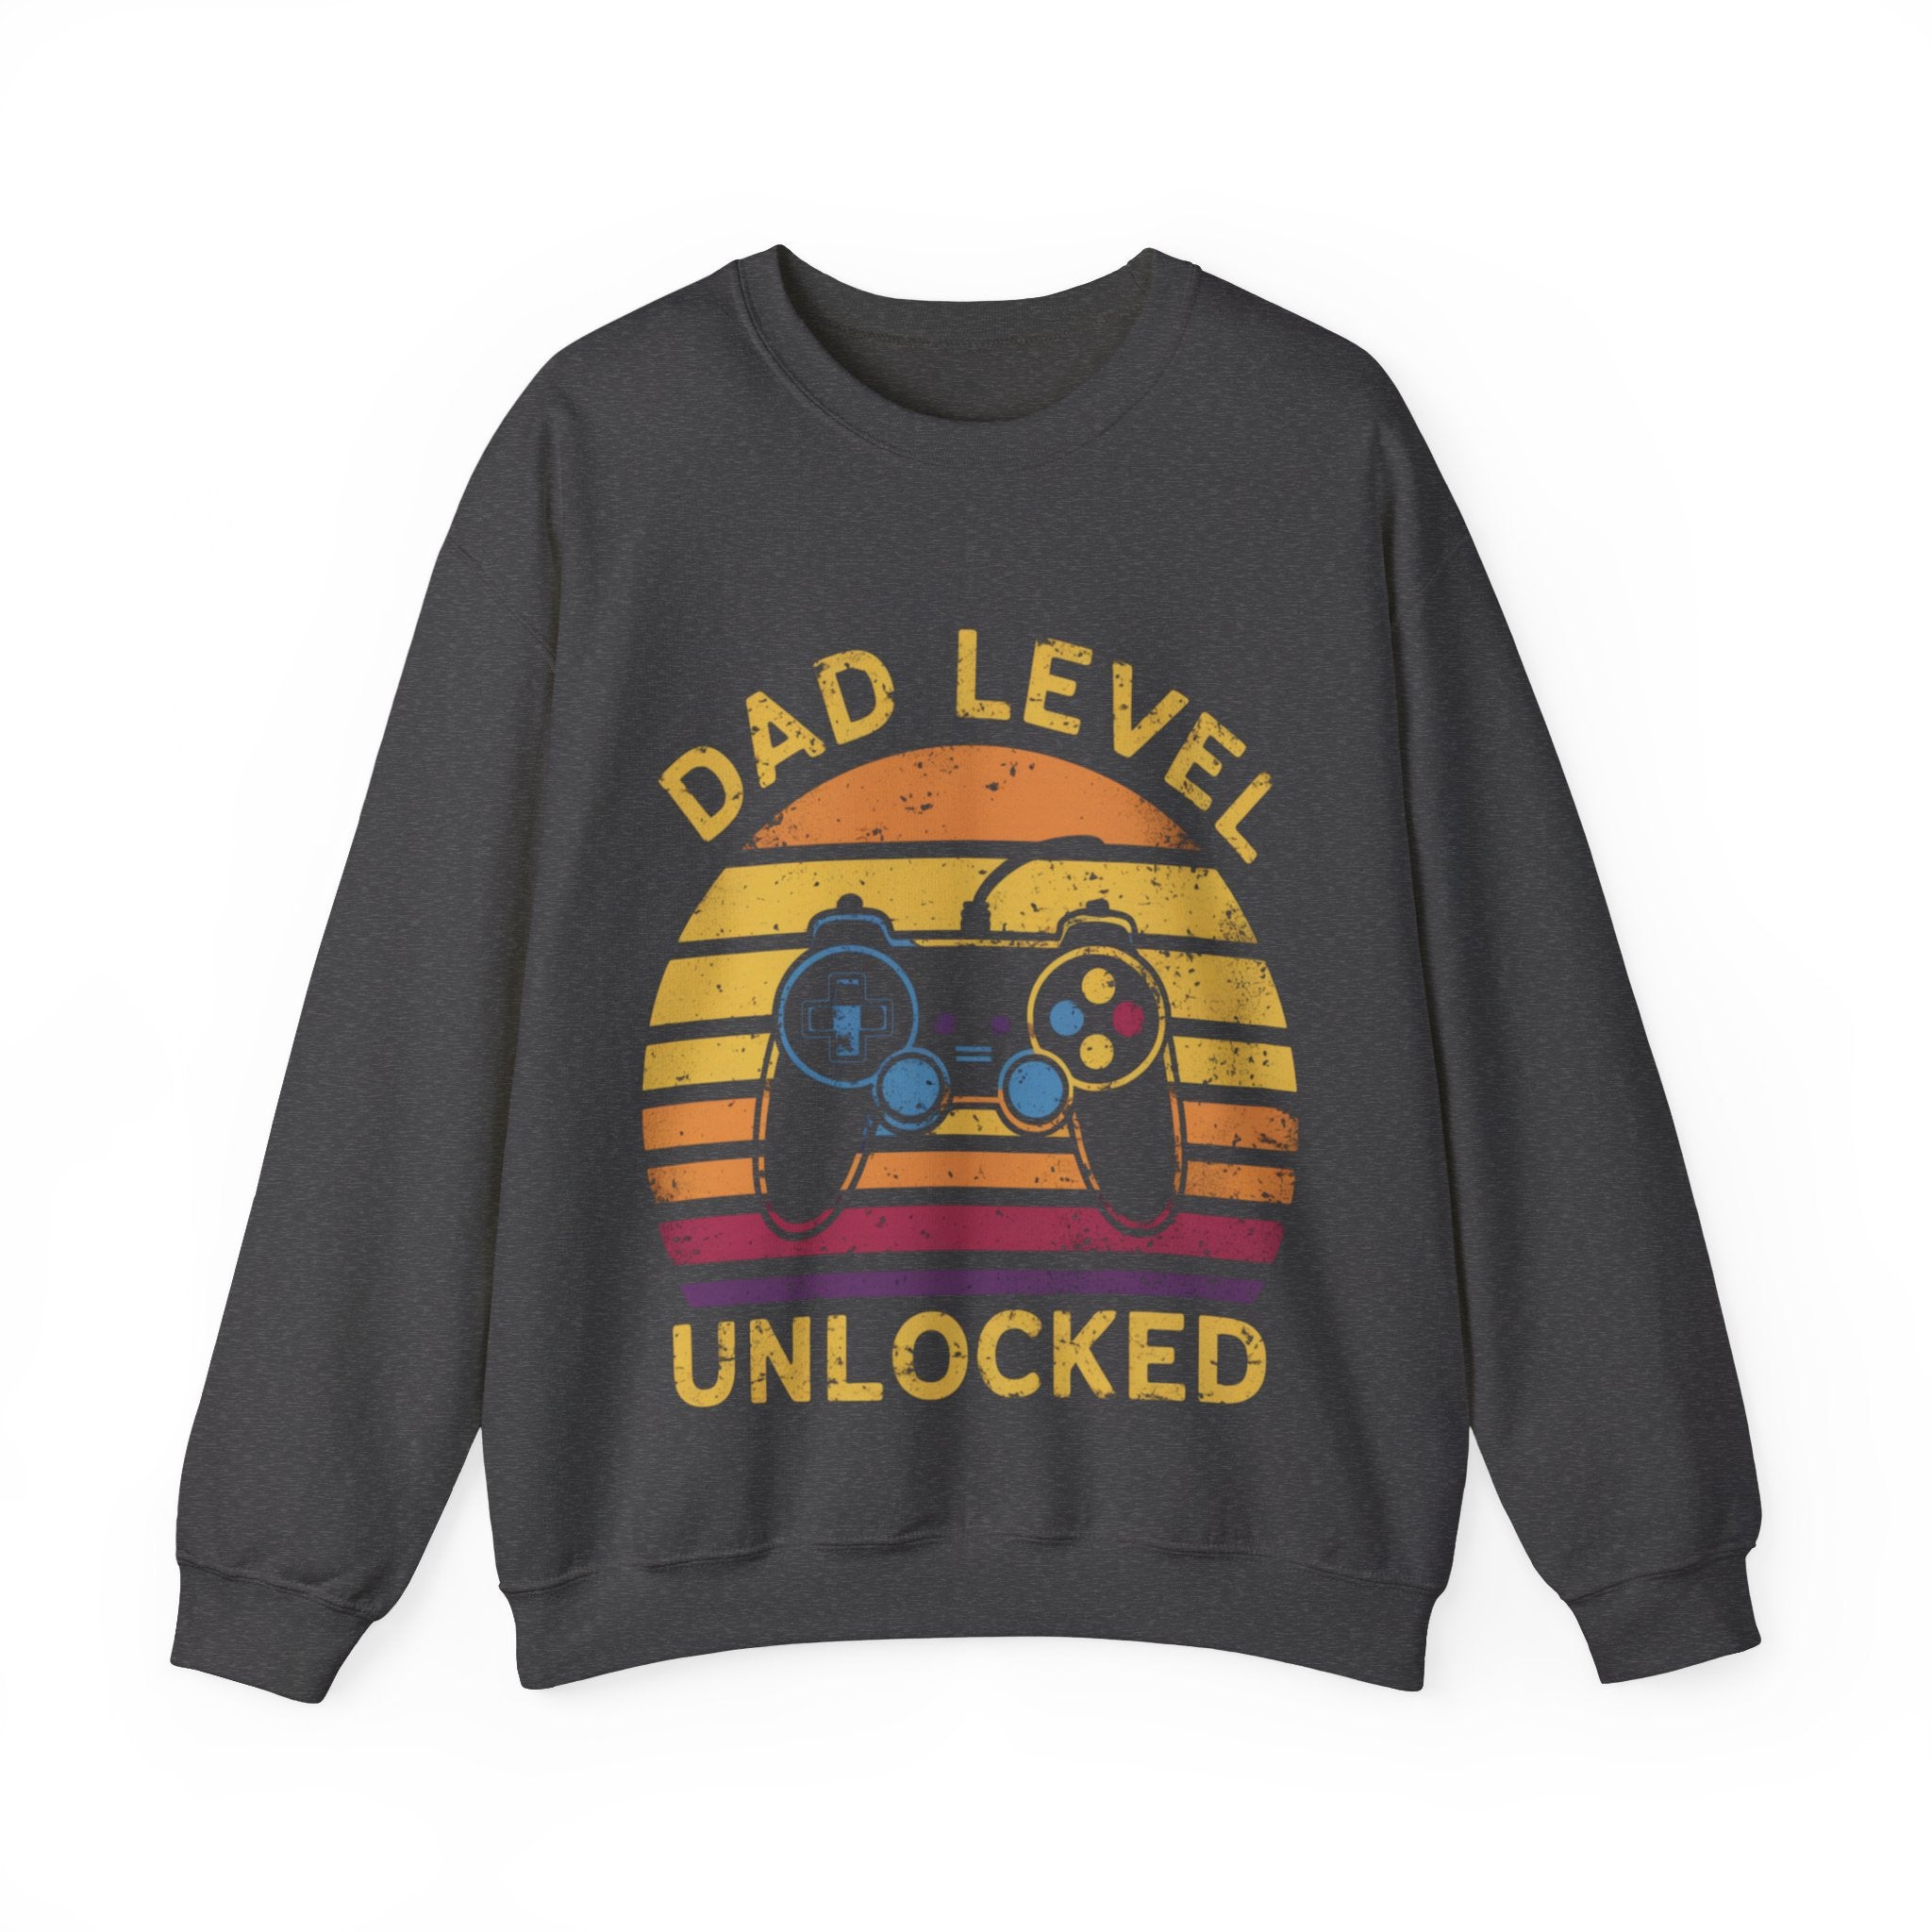 Dad Sweatshirt